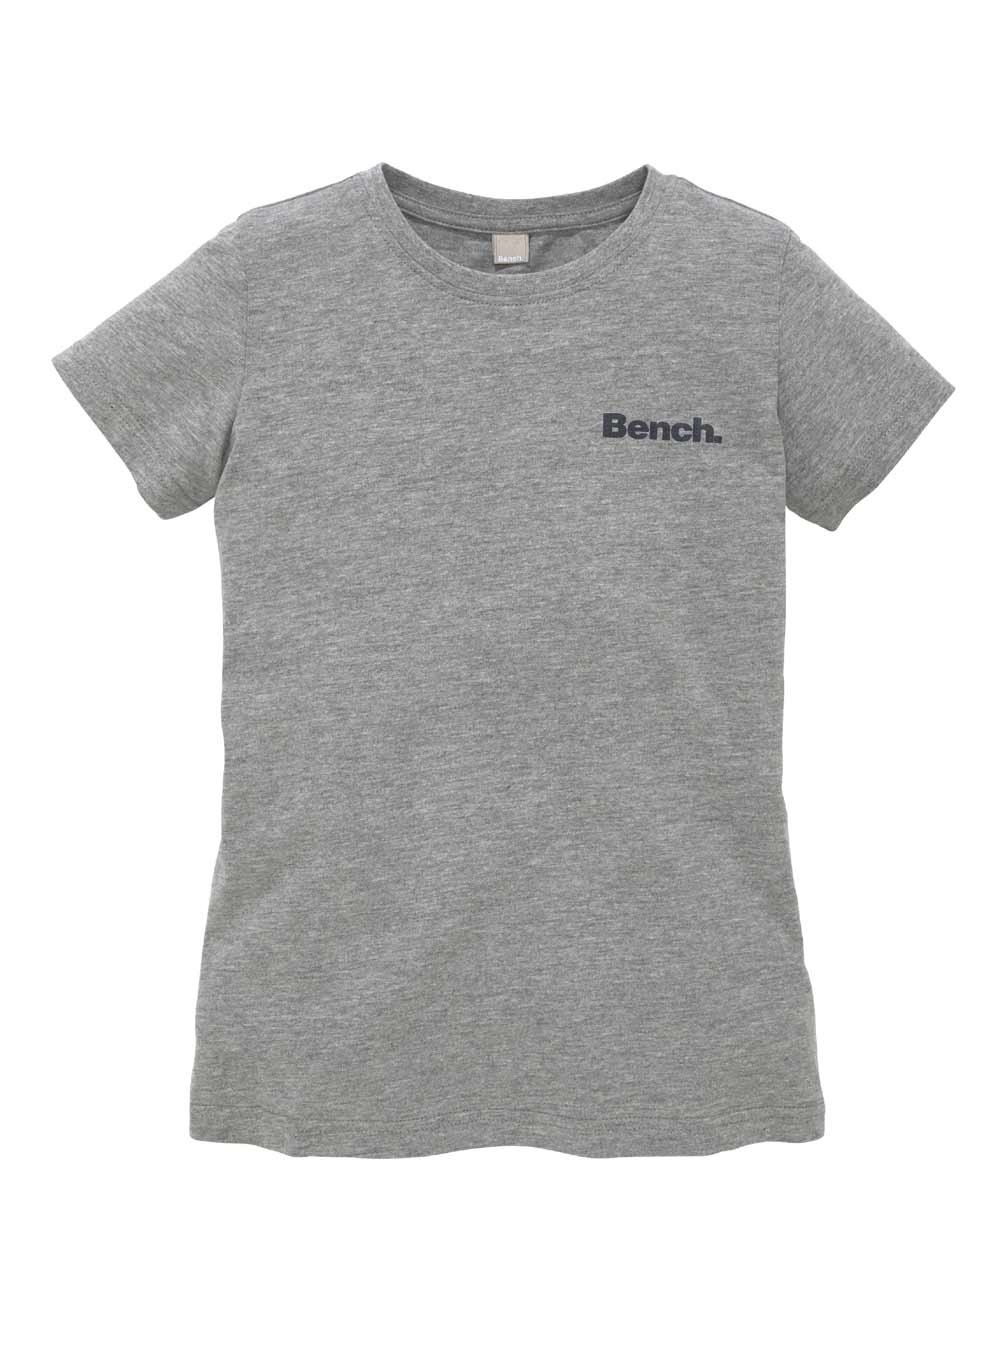 Marken-Kinder-Shirt grau-melange – Speziellities